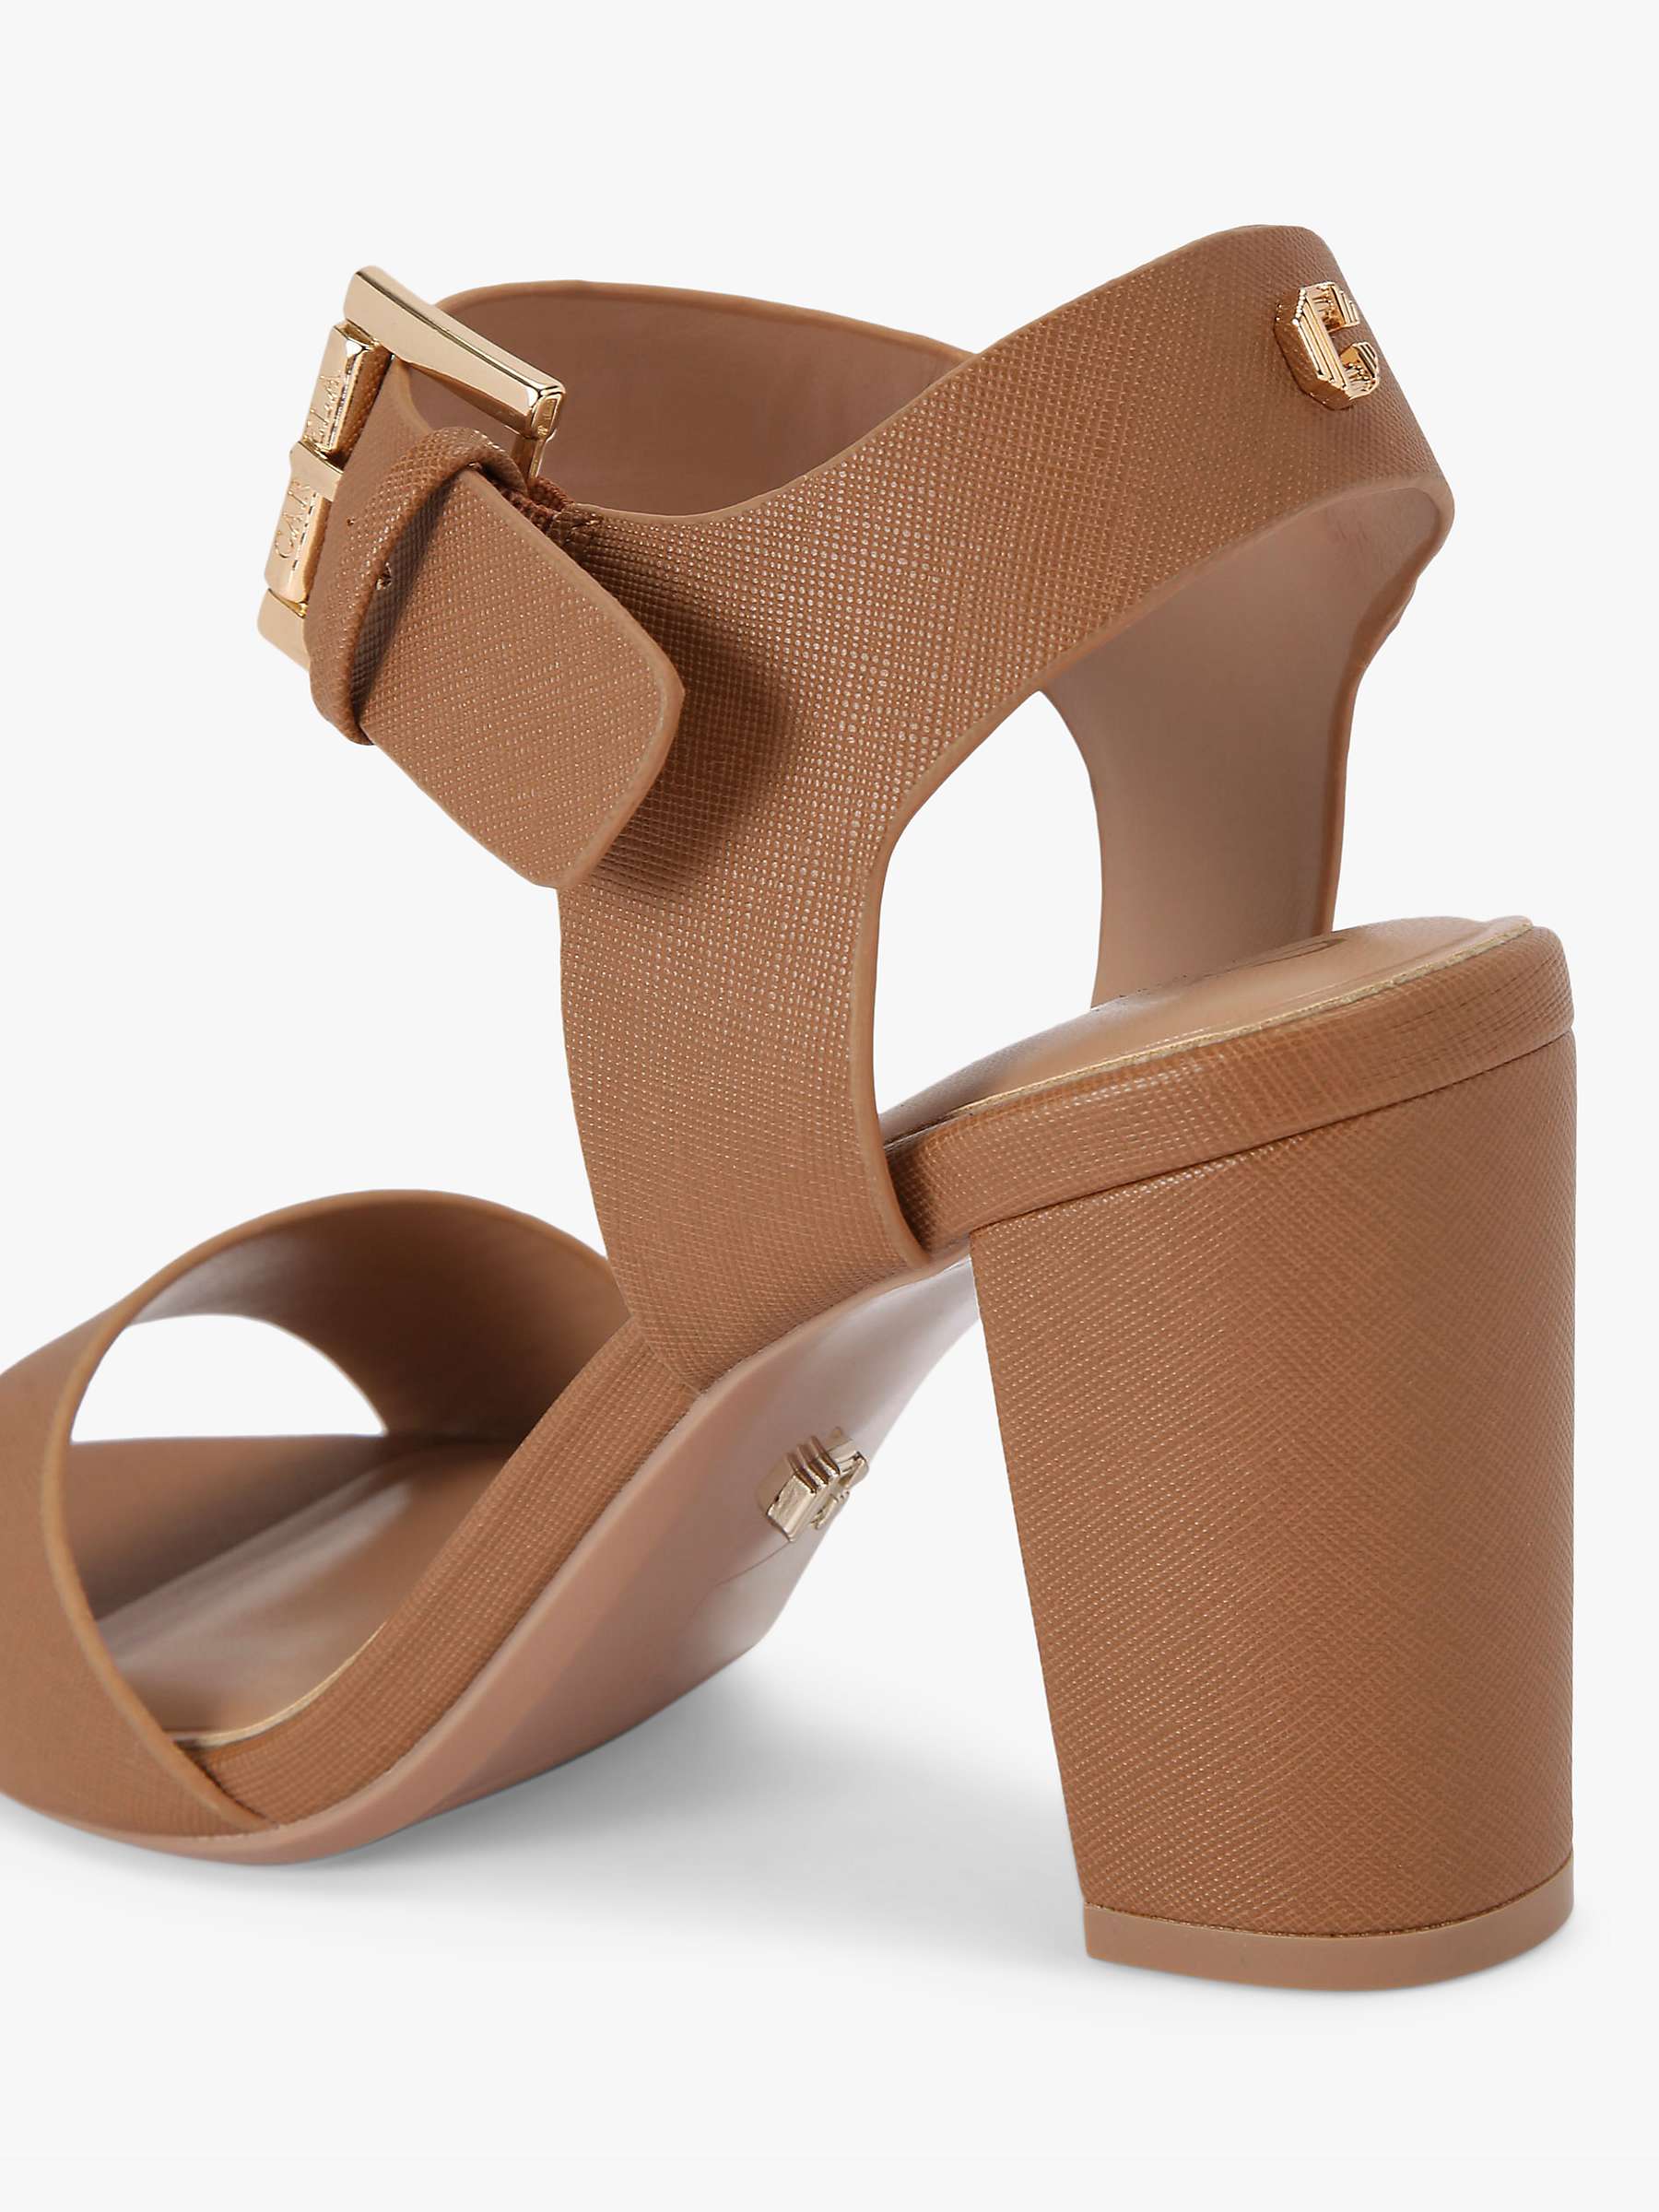 Buy Carvela Sadie 2 Block Heel Sandals Online at johnlewis.com